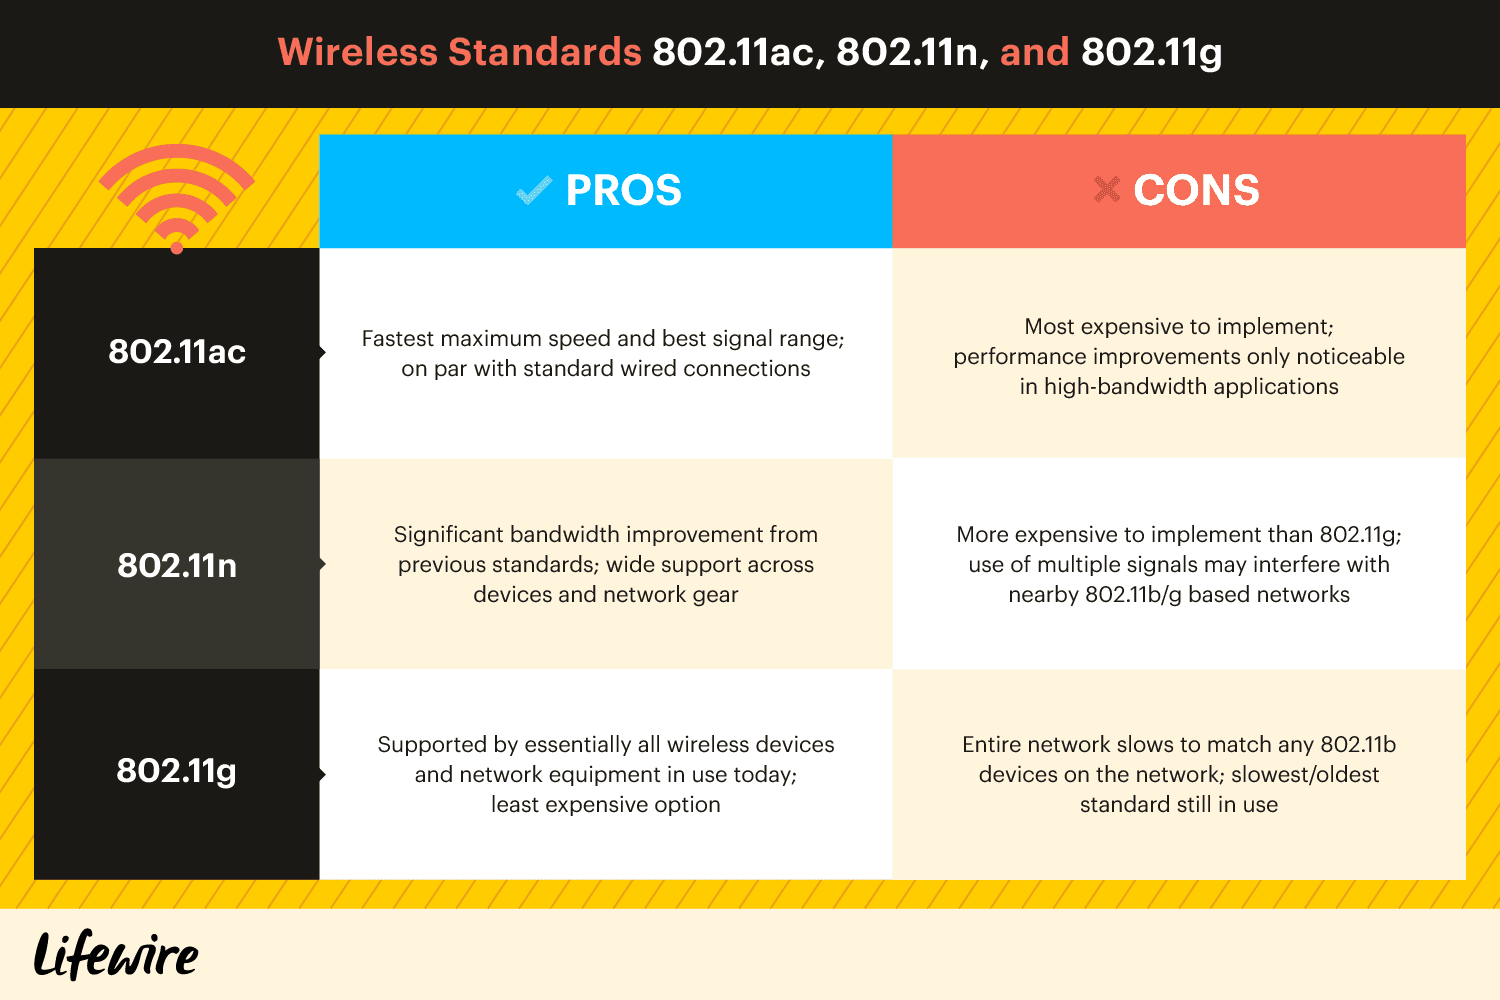 Сравнительная таблица преимуществ и недостатков беспроводных стандартов 802.11sc, 802.11n и 802.11g.